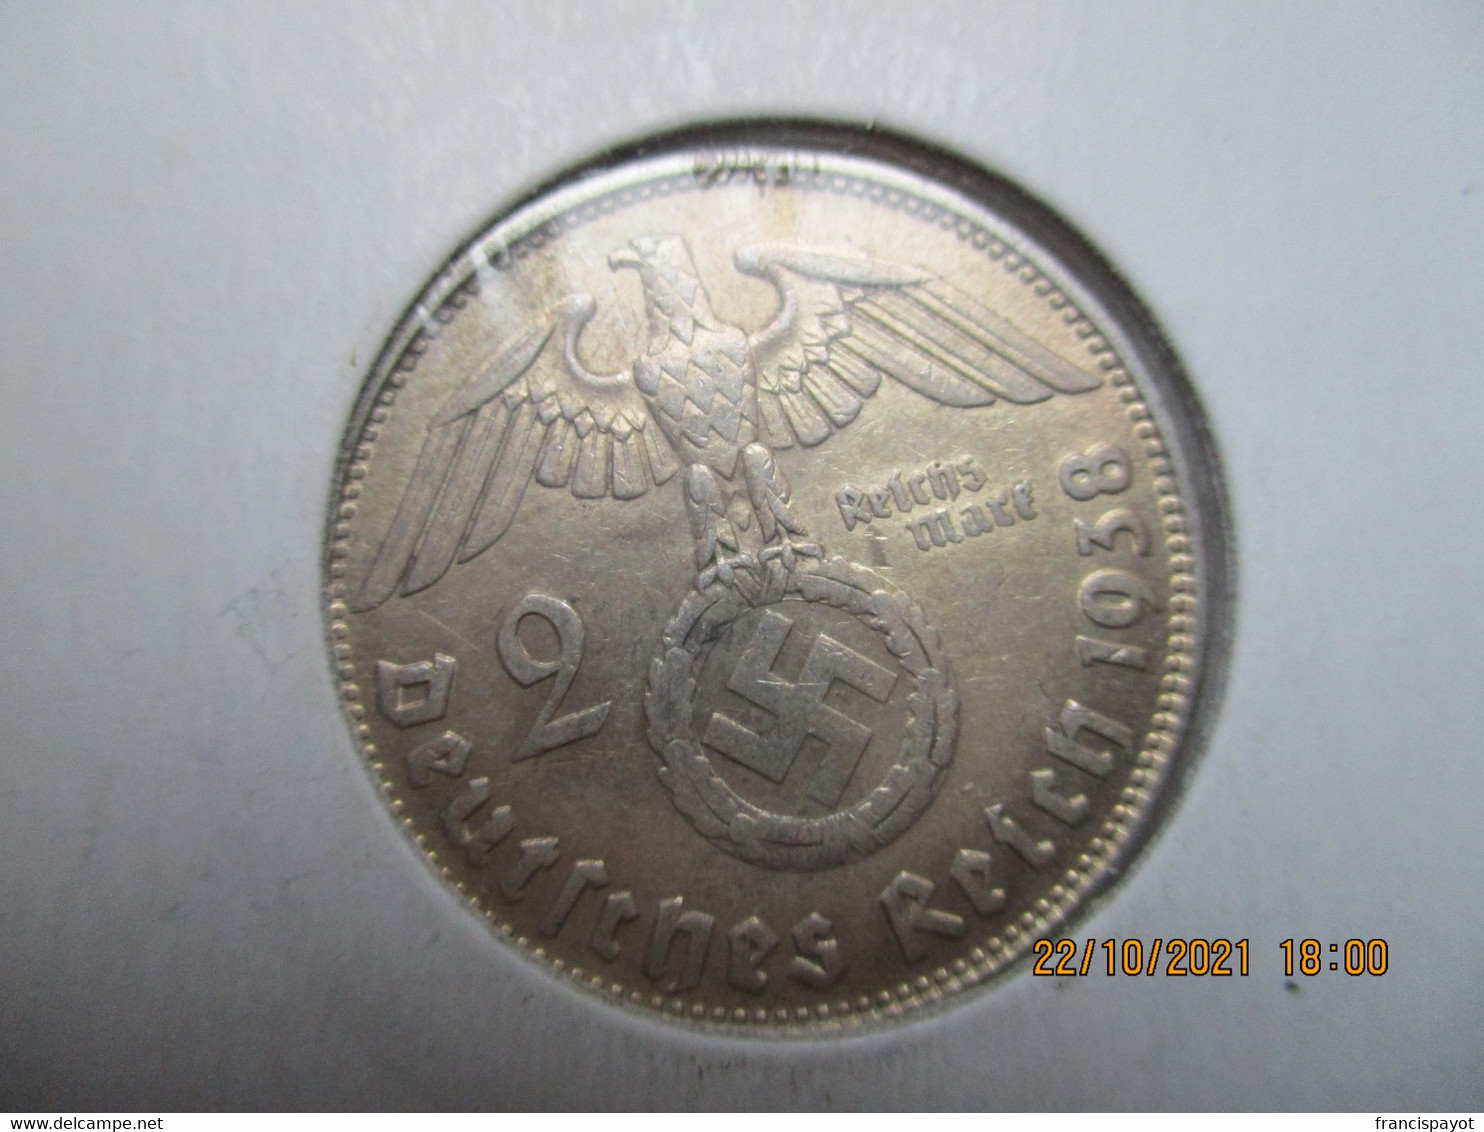 2 Reichmark 1938 B - 2 Reichsmark